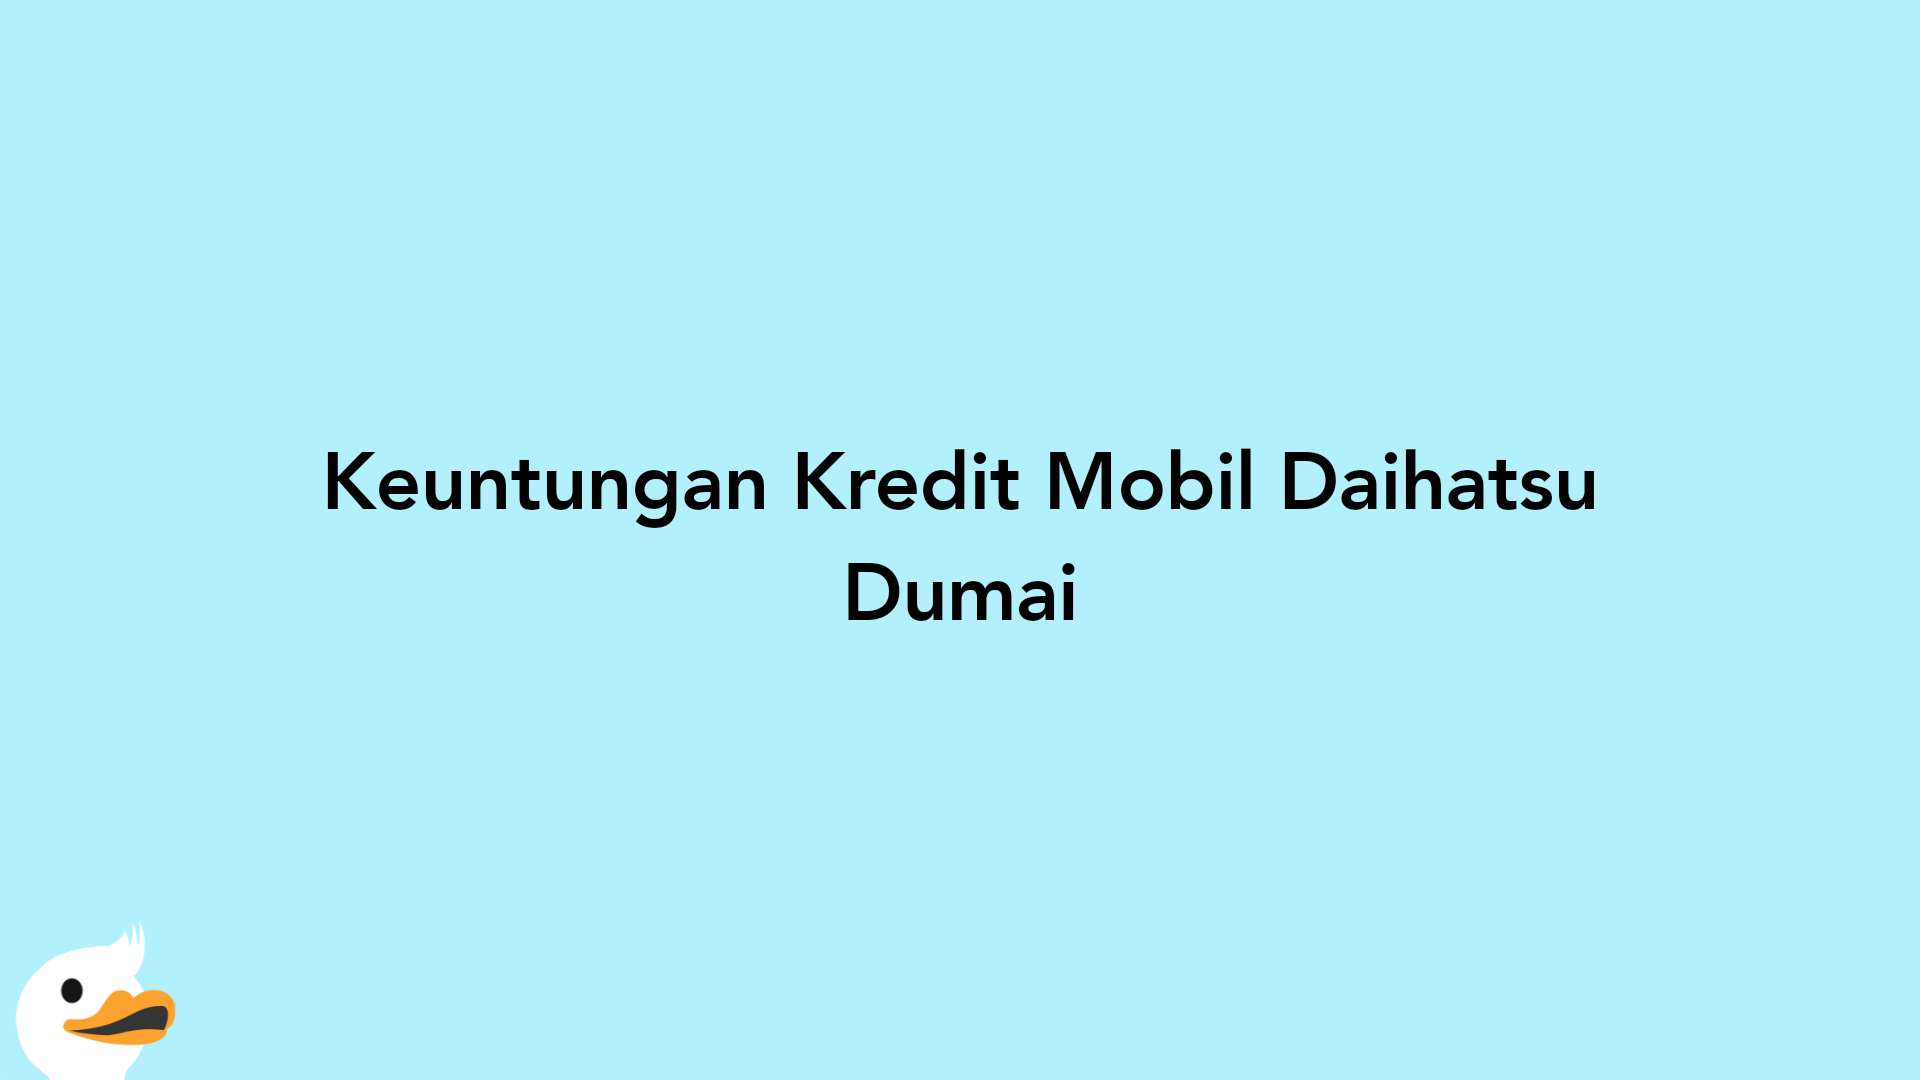 Keuntungan Kredit Mobil Daihatsu Dumai